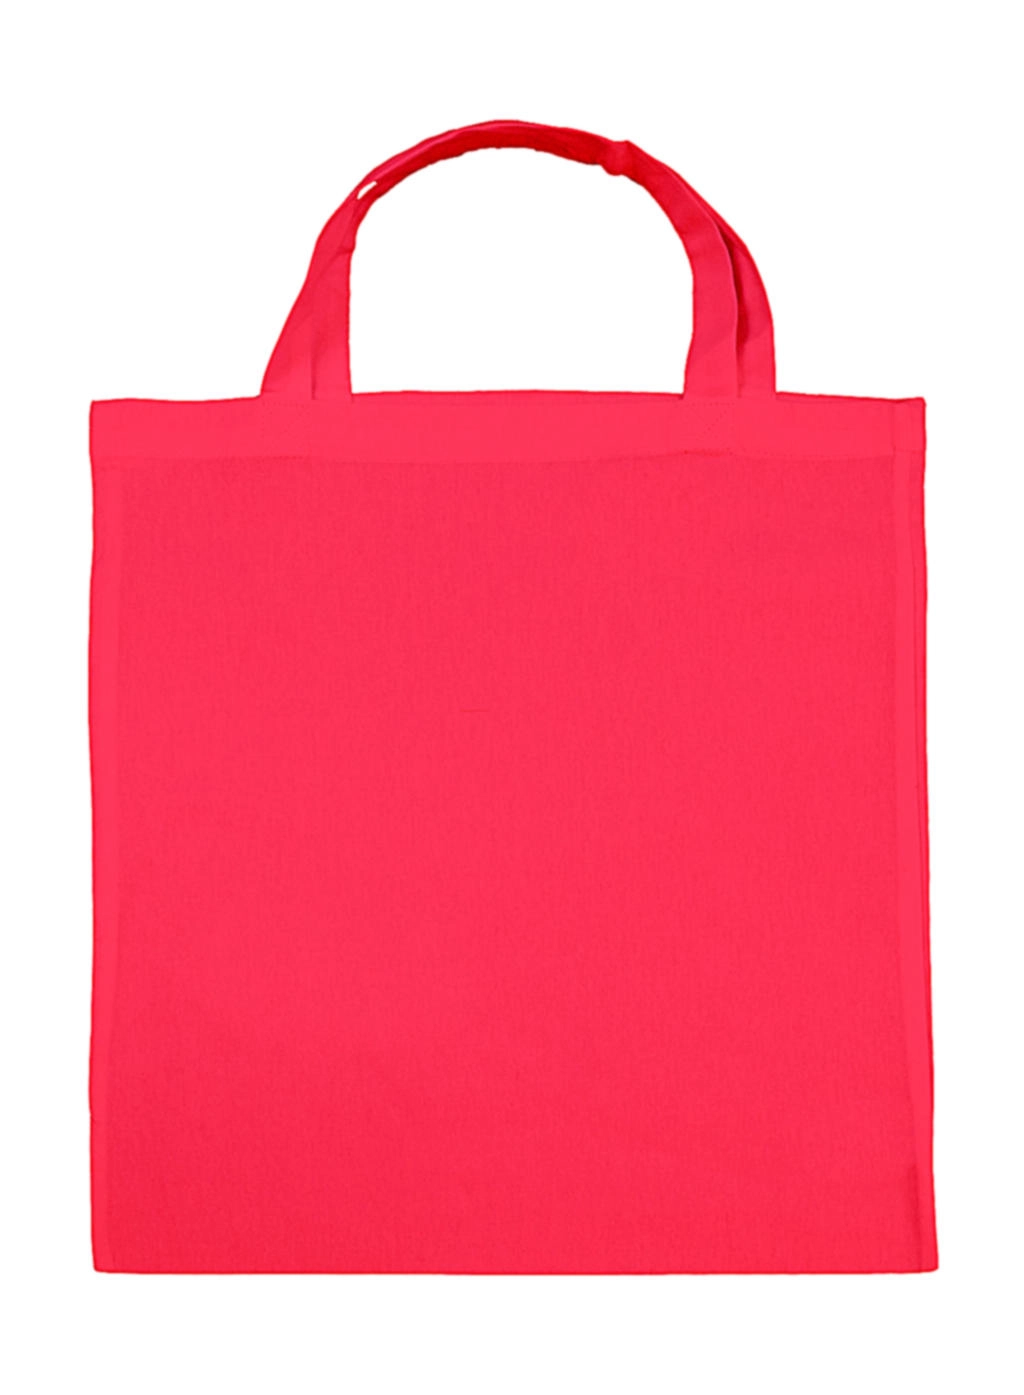 Cotton Shopper SH zum Besticken und Bedrucken in der Farbe Rouge Red mit Ihren Logo, Schriftzug oder Motiv.